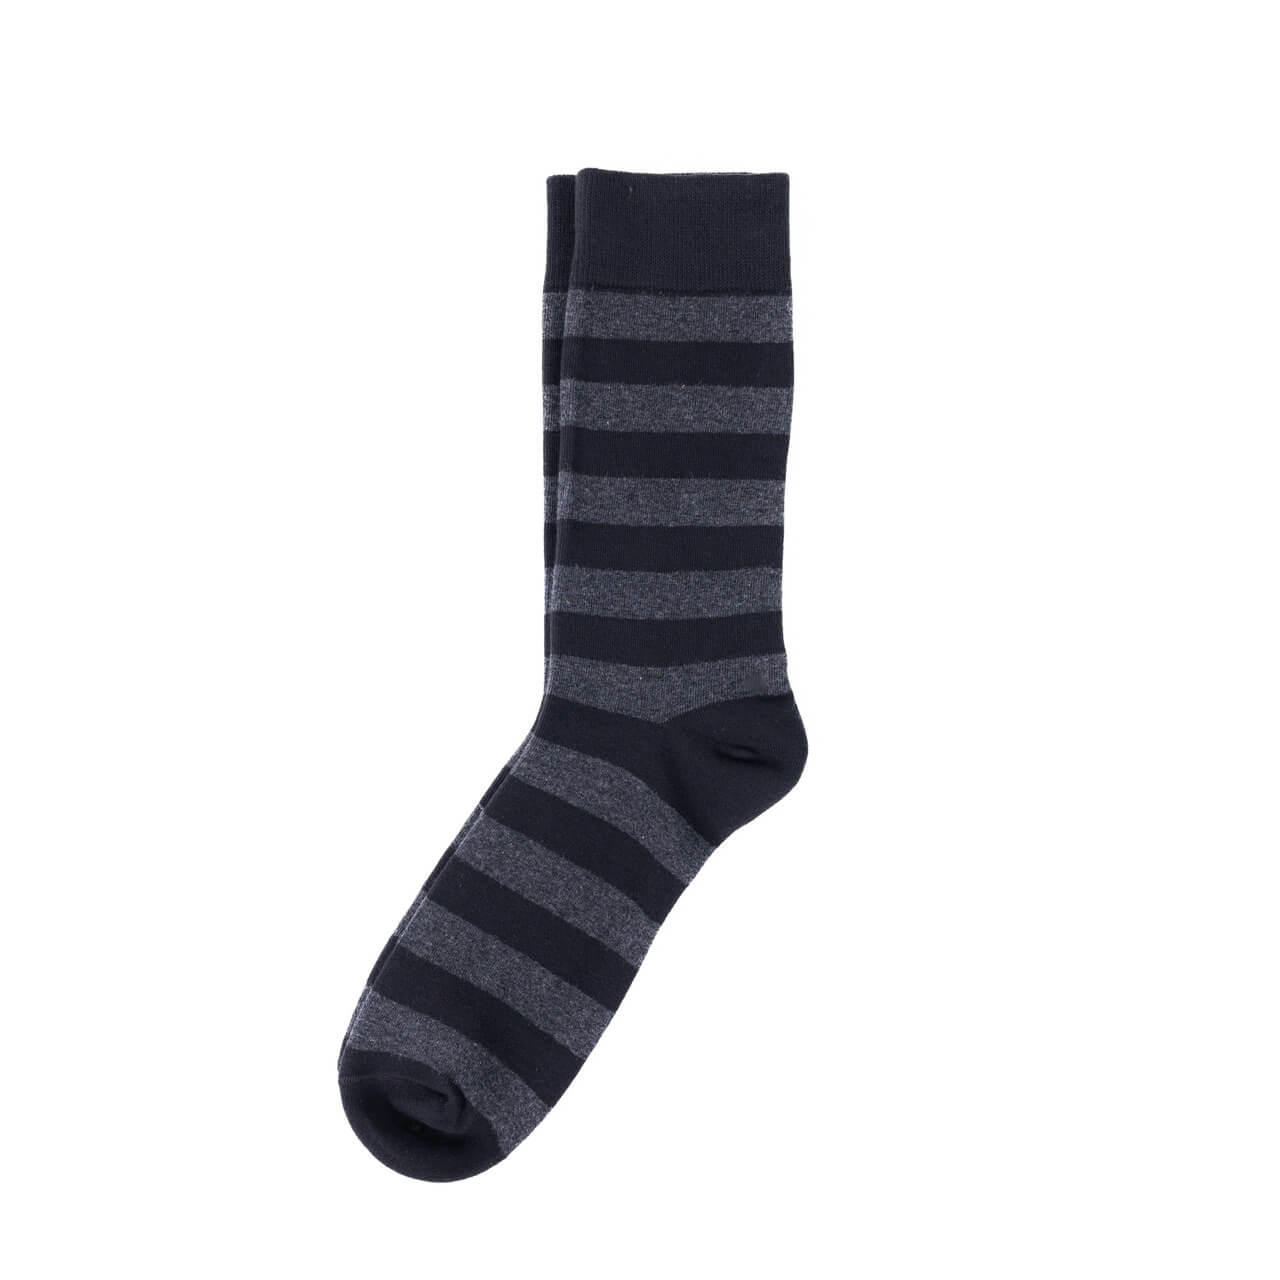 Men’s Dress Socks | Order Dress Socks for Men Online - Nimble Made